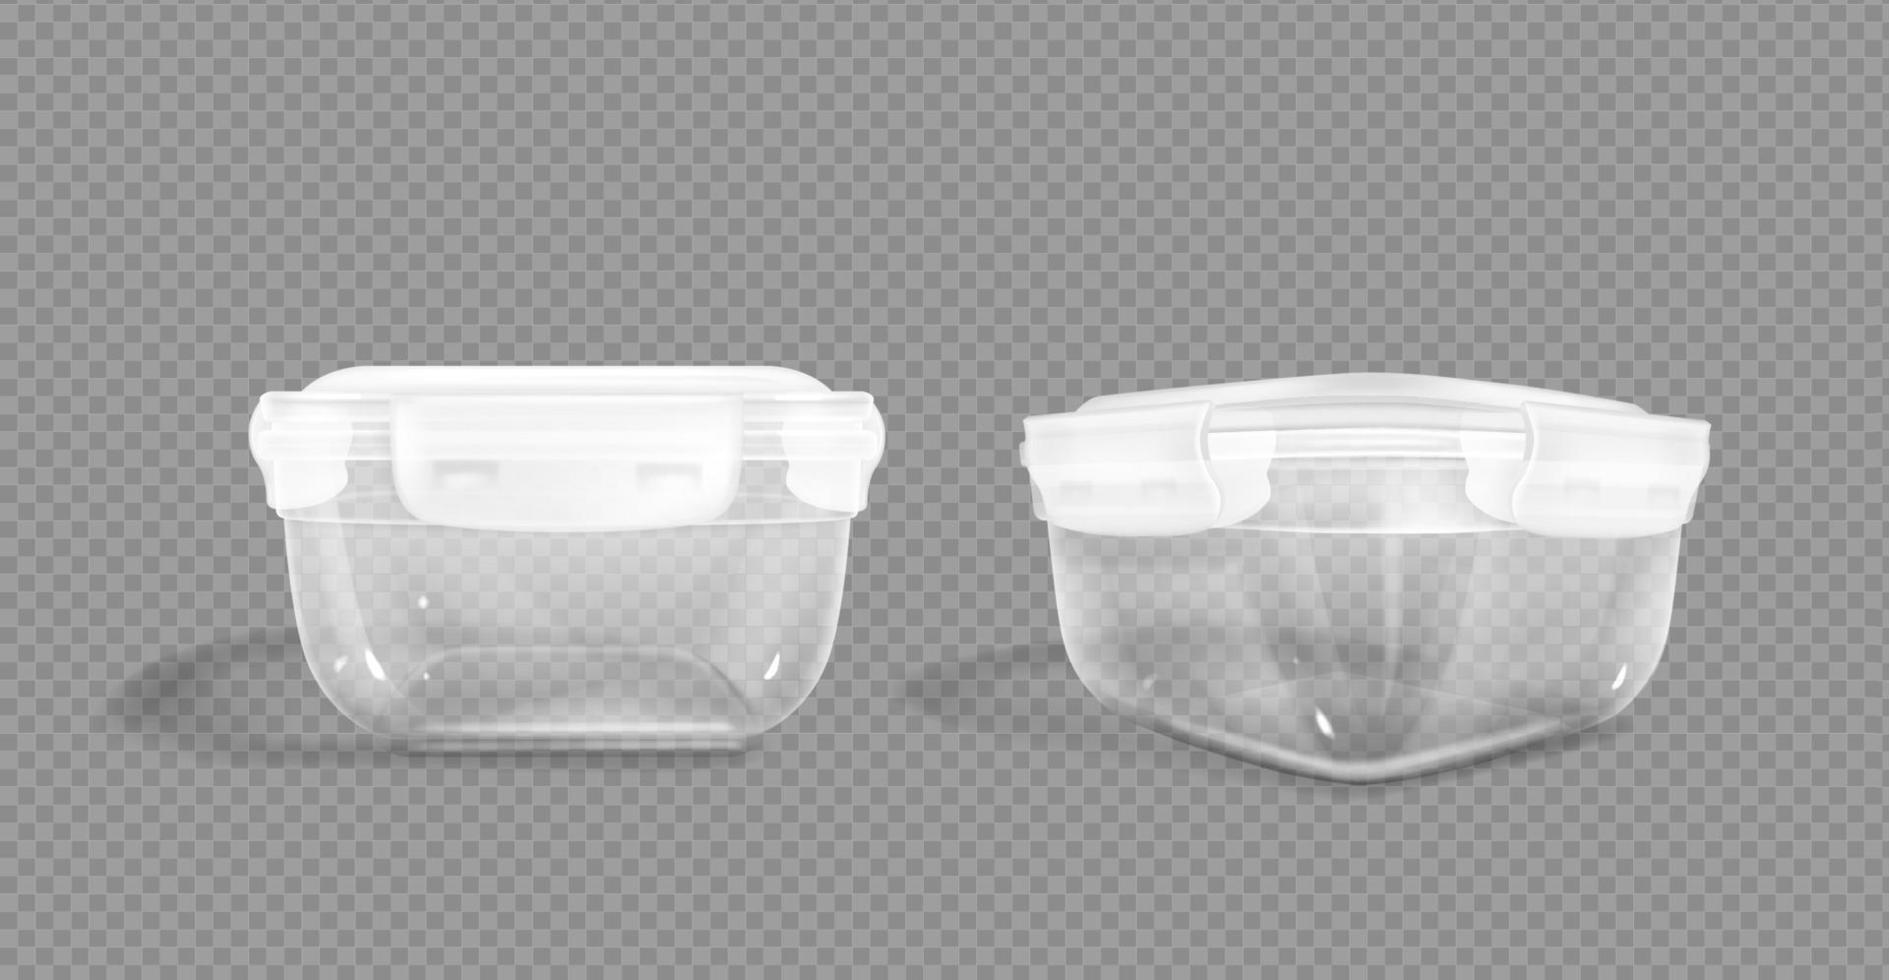 Beschneidungspfad für Lebensmittelbehälter aus Kunststoff, Verschlussdeckel. vektor